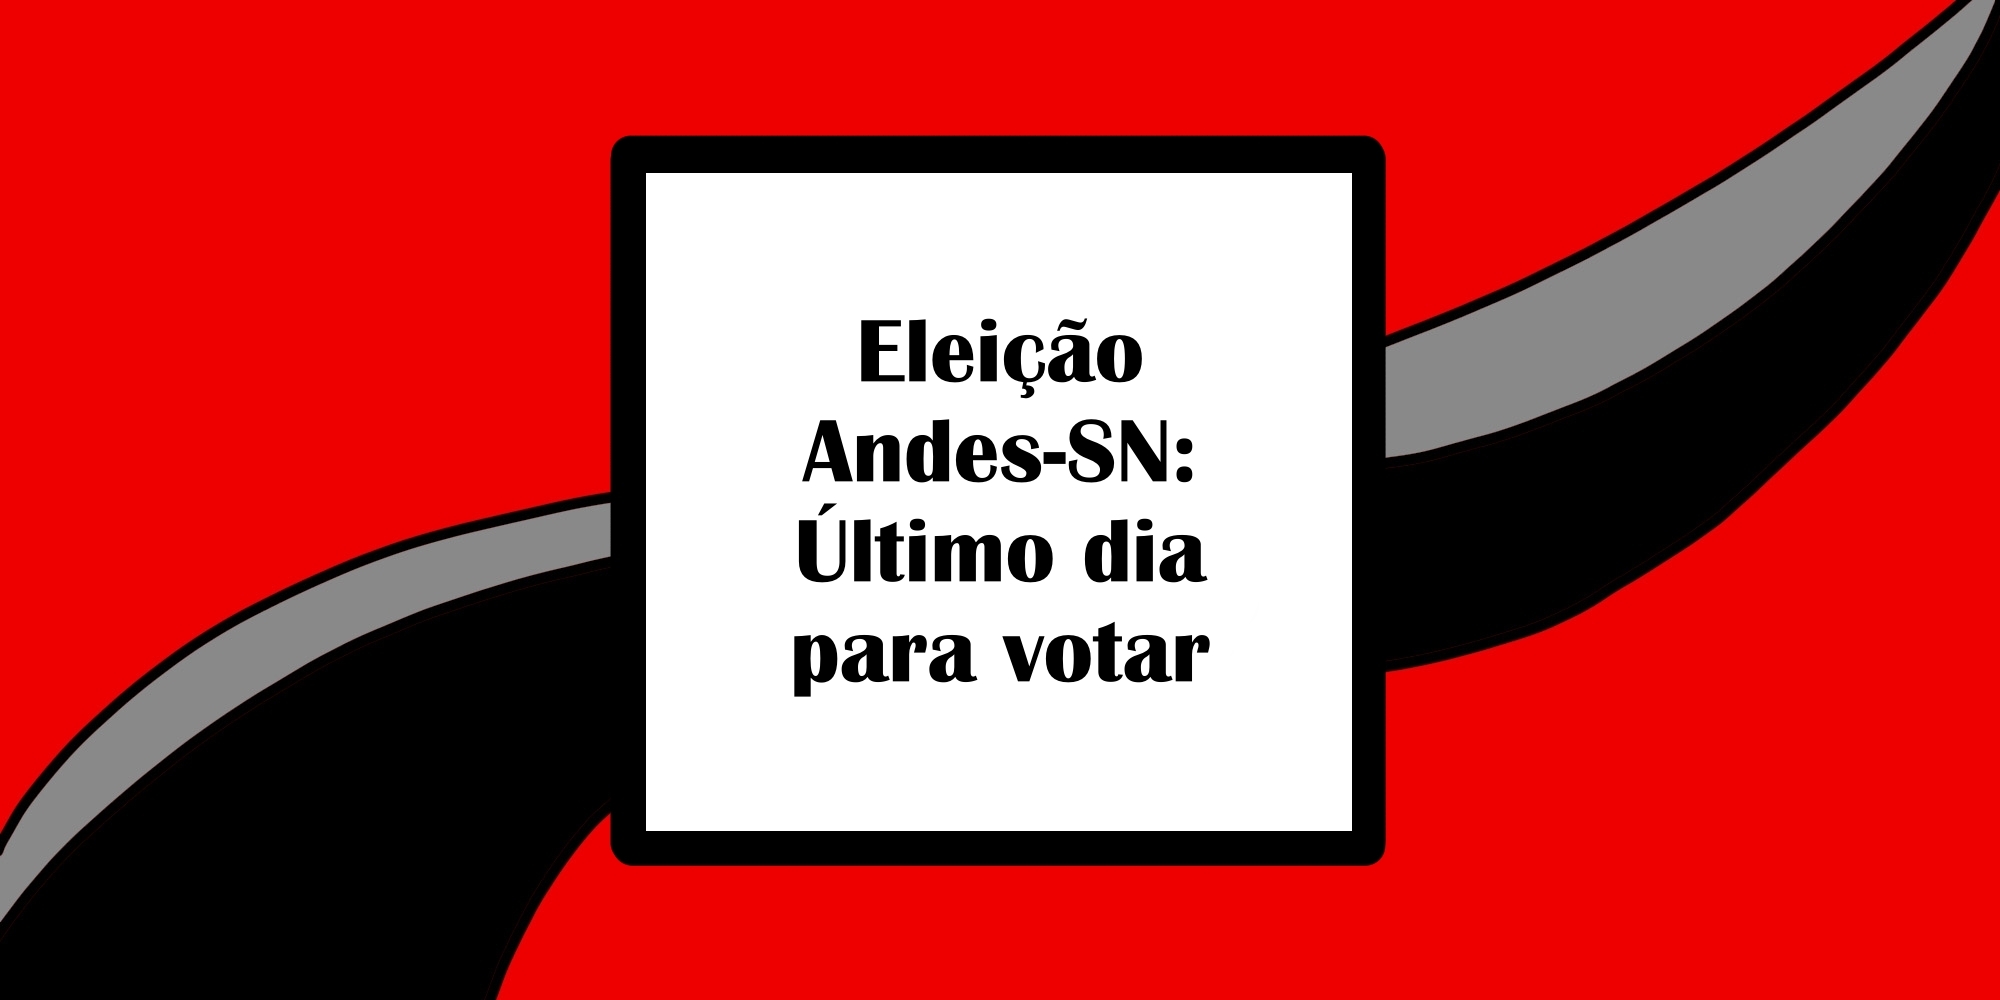 Eleição Andes-SN: Último dia para votar